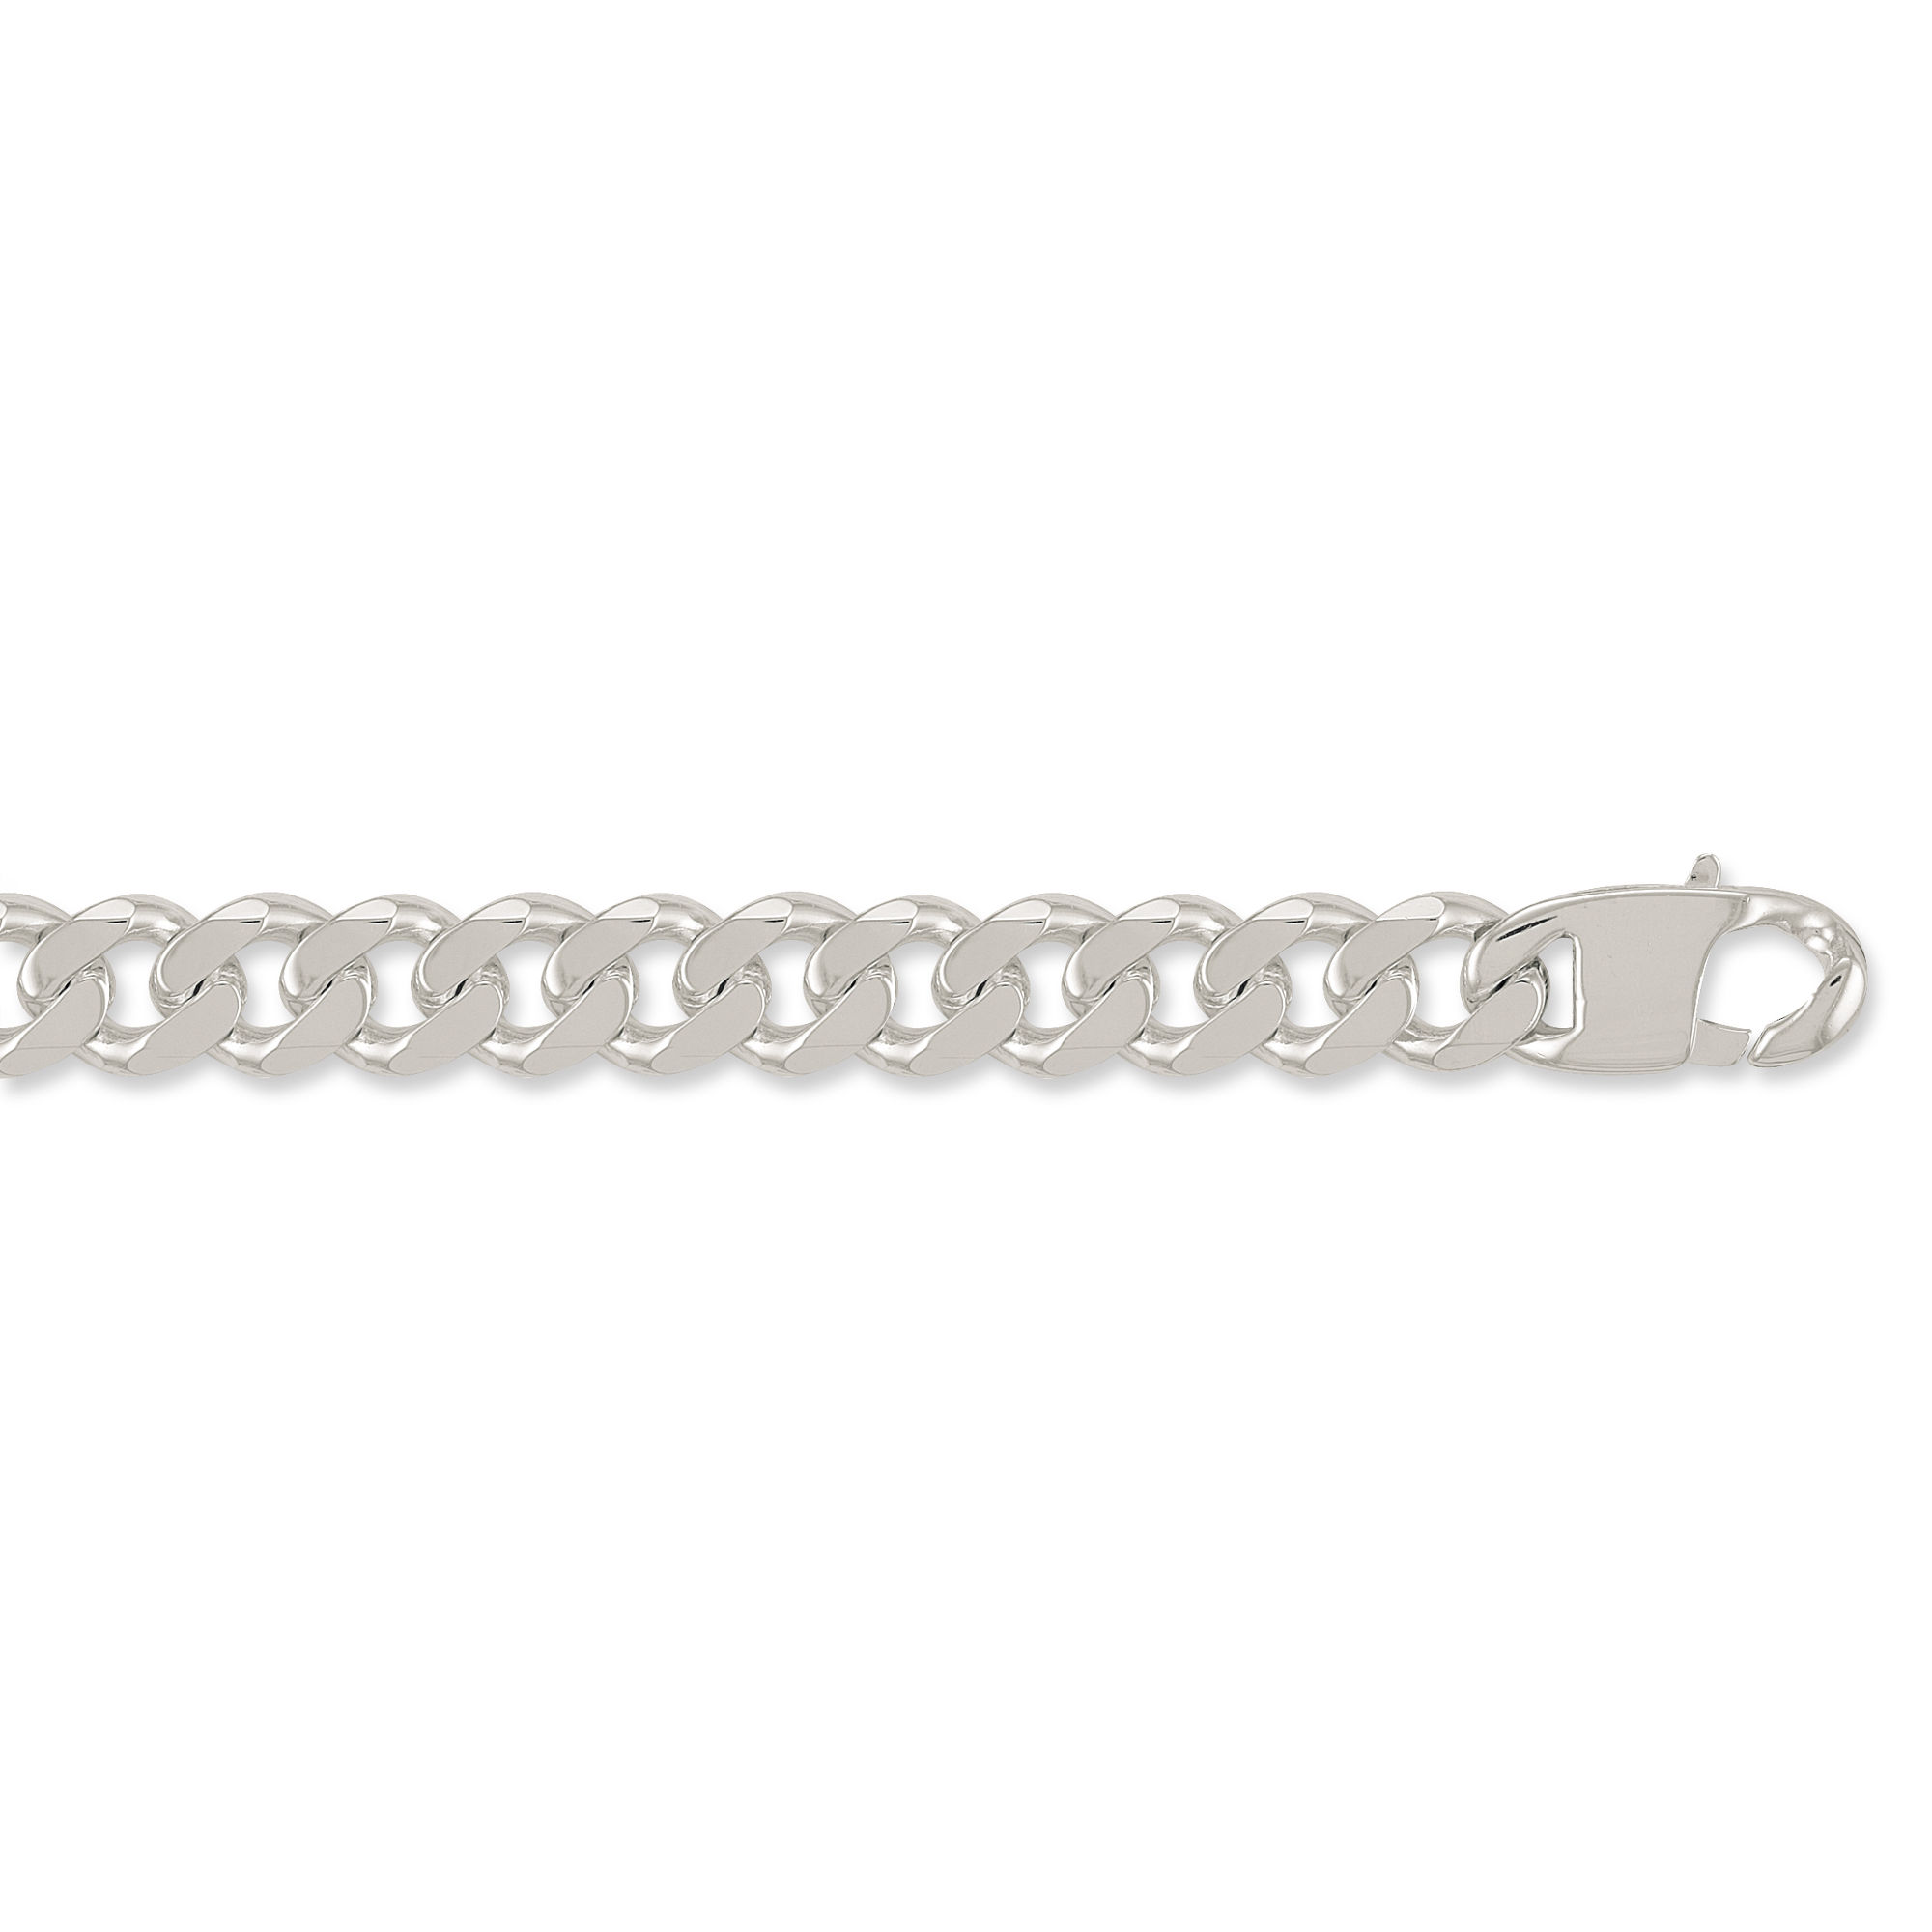 Silver 19.7mm Curb Chain